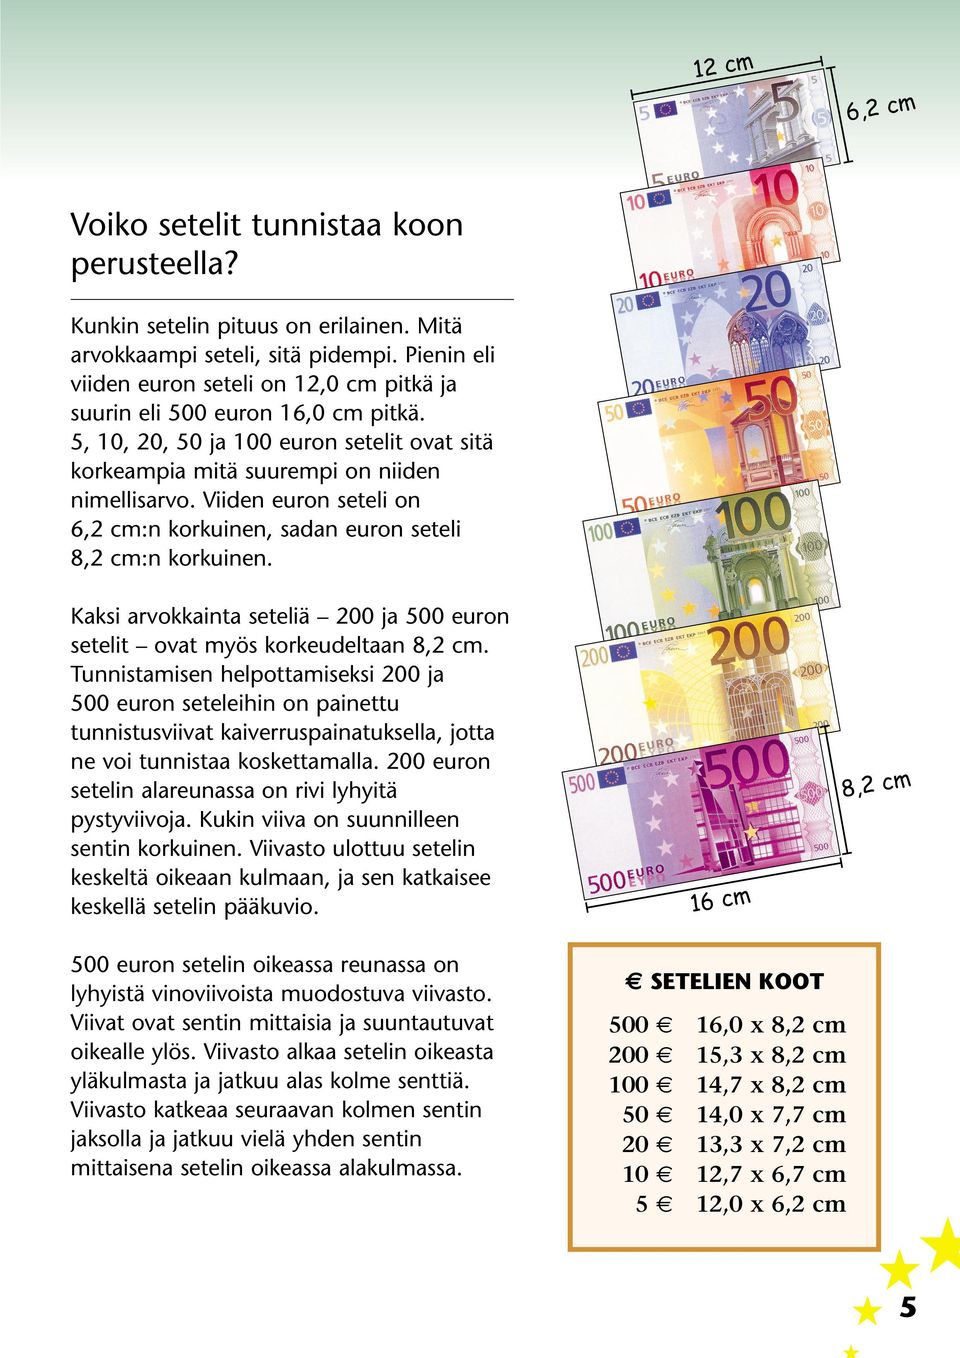 Viiden euron seteli on 6,2 cm:n korkuinen, sadan euron seteli 8,2 cm:n korkuinen. Kaksi arvokkainta seteliä 200 ja 500 euron setelit ovat myös korkeudeltaan 8,2 cm.